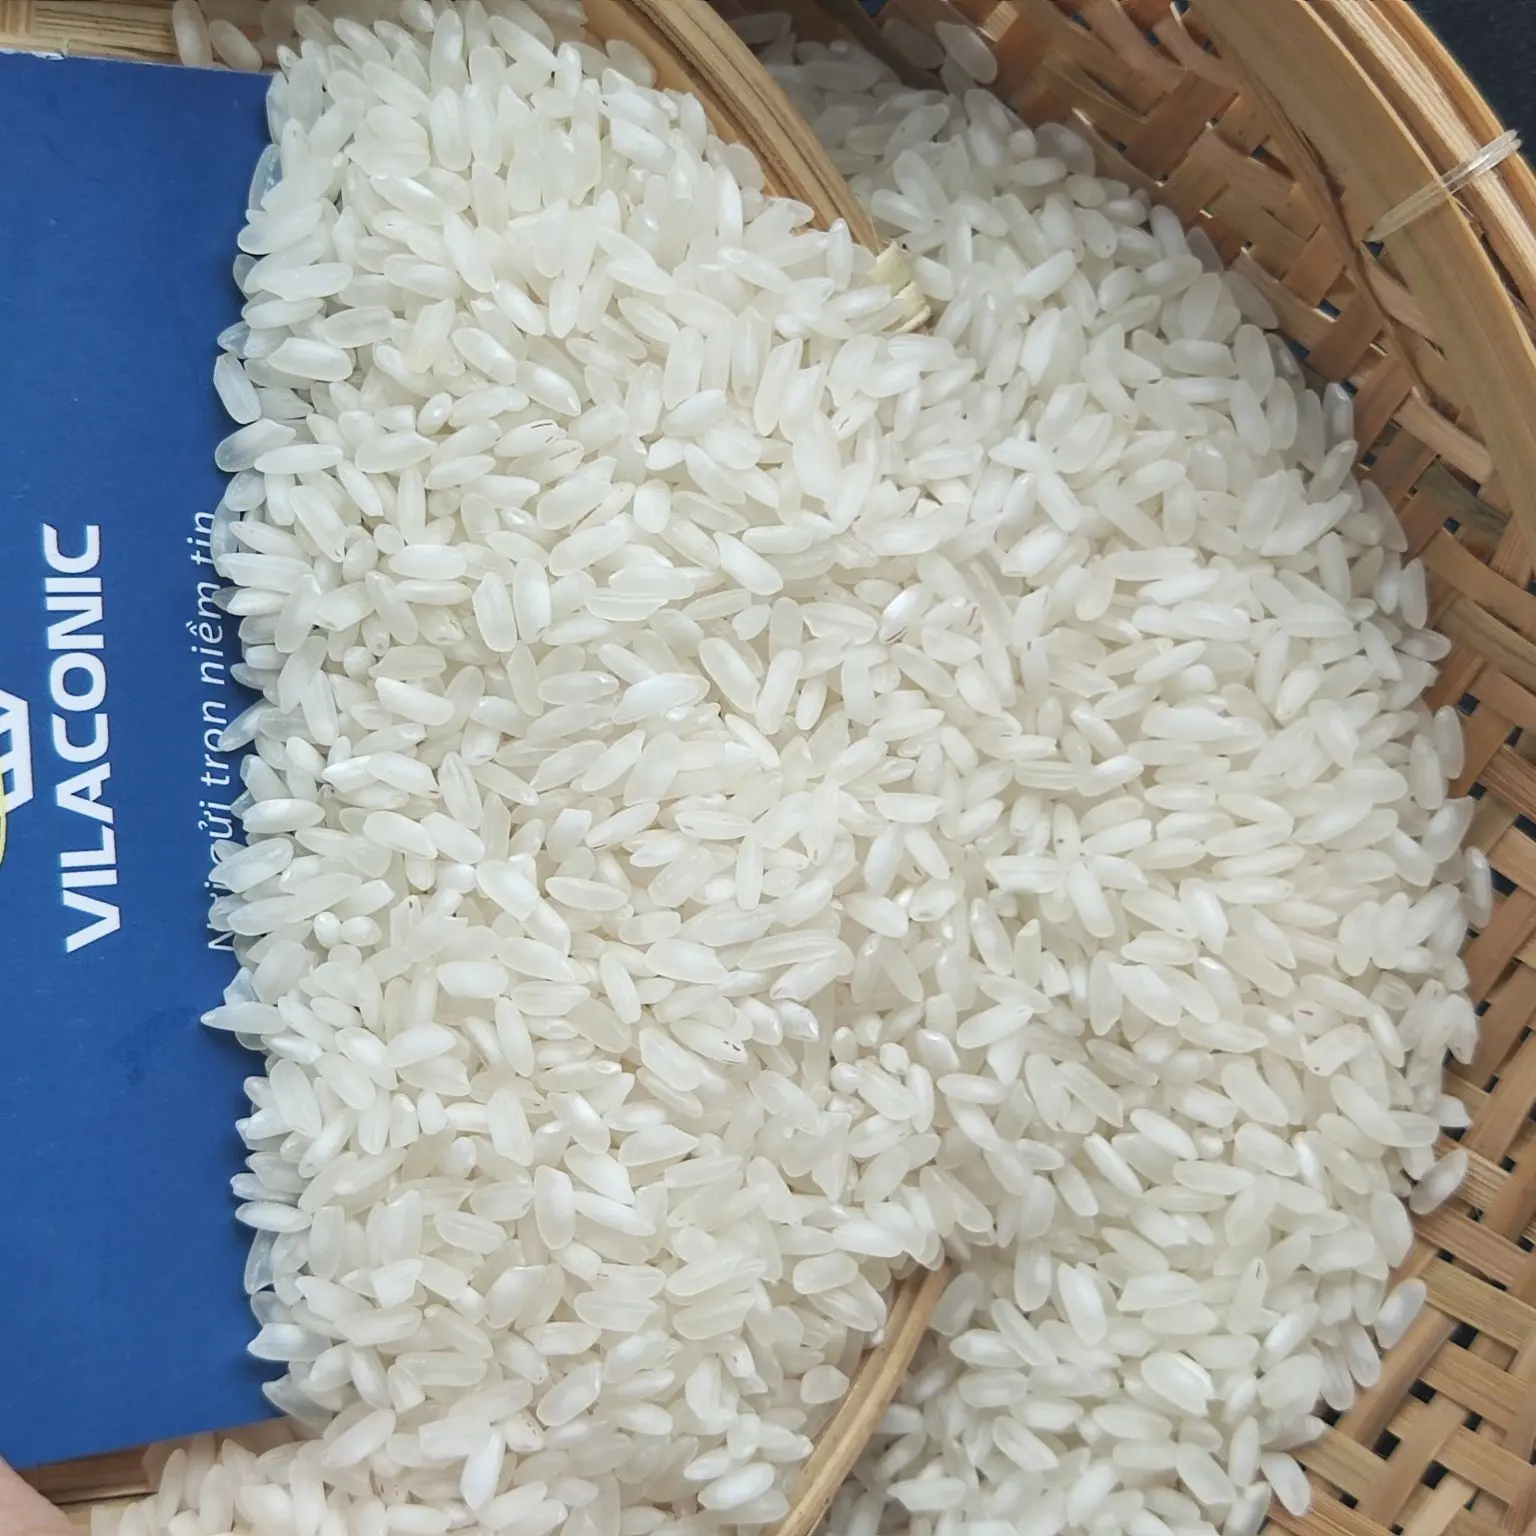 Cao cấp Trung Bình egyptant camolino gạo từ Việt Nam